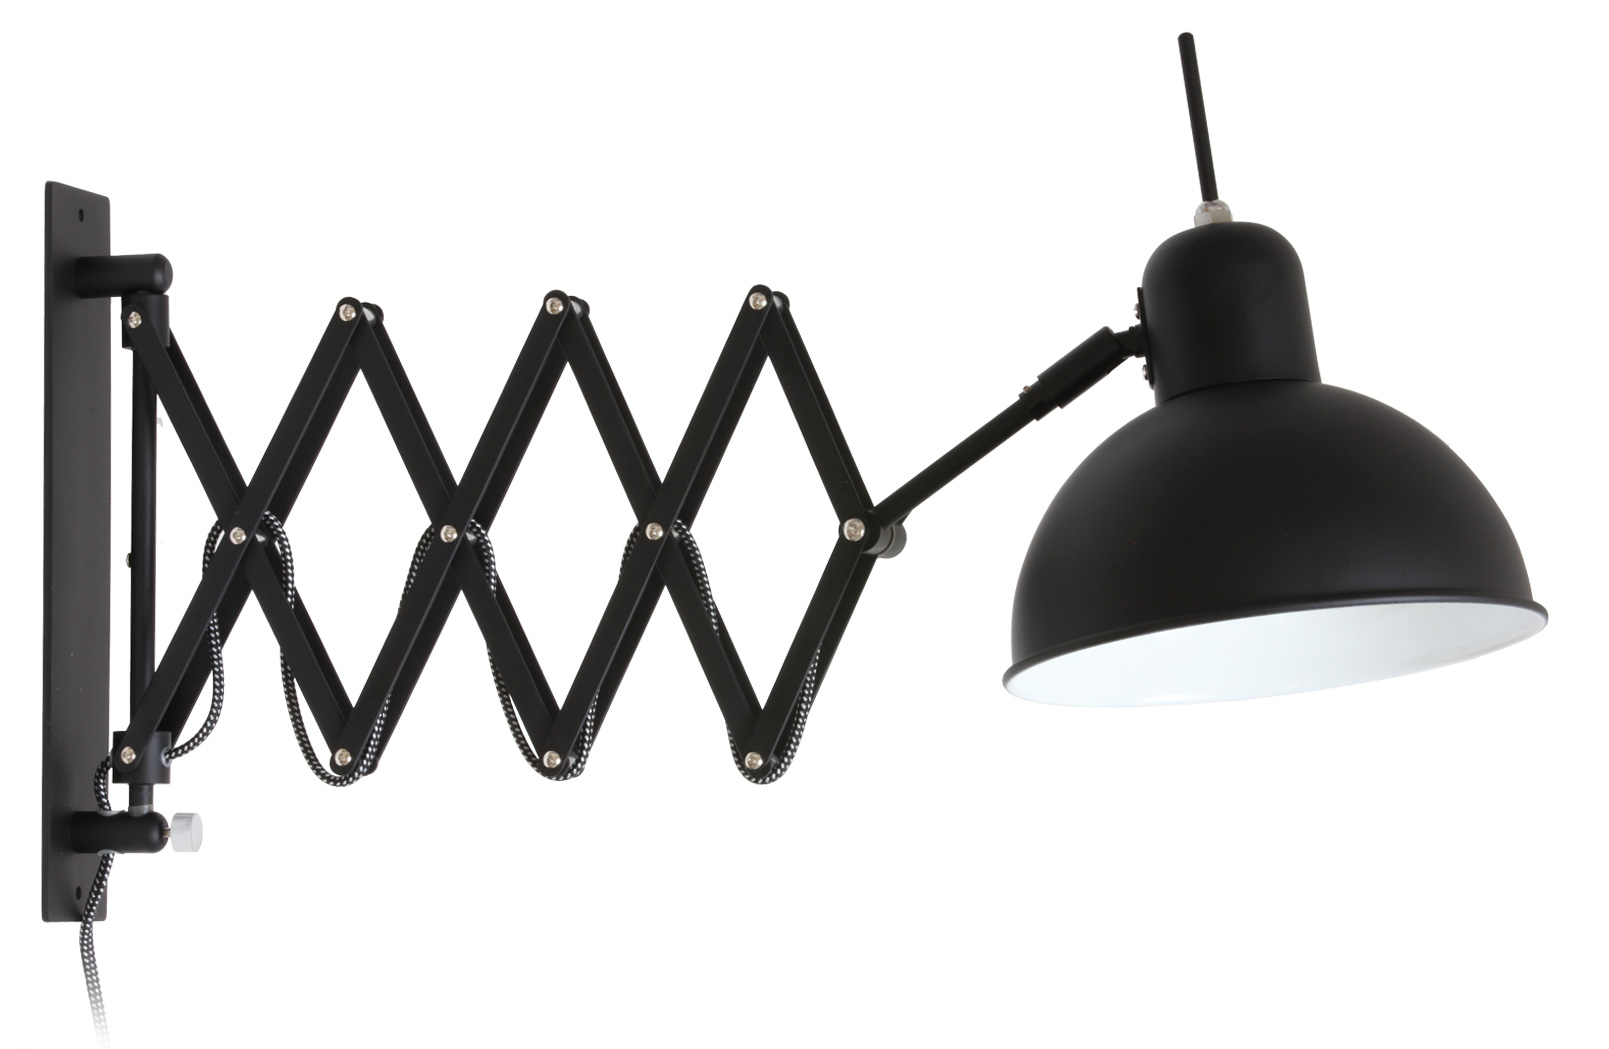 Bauhaus-Scherenleuchte aus Stahl in Schwarz: Wandschild, Schere und Reflektor der Bauhaus-Scherenleuchte aus schwarz lackiertem Stahl